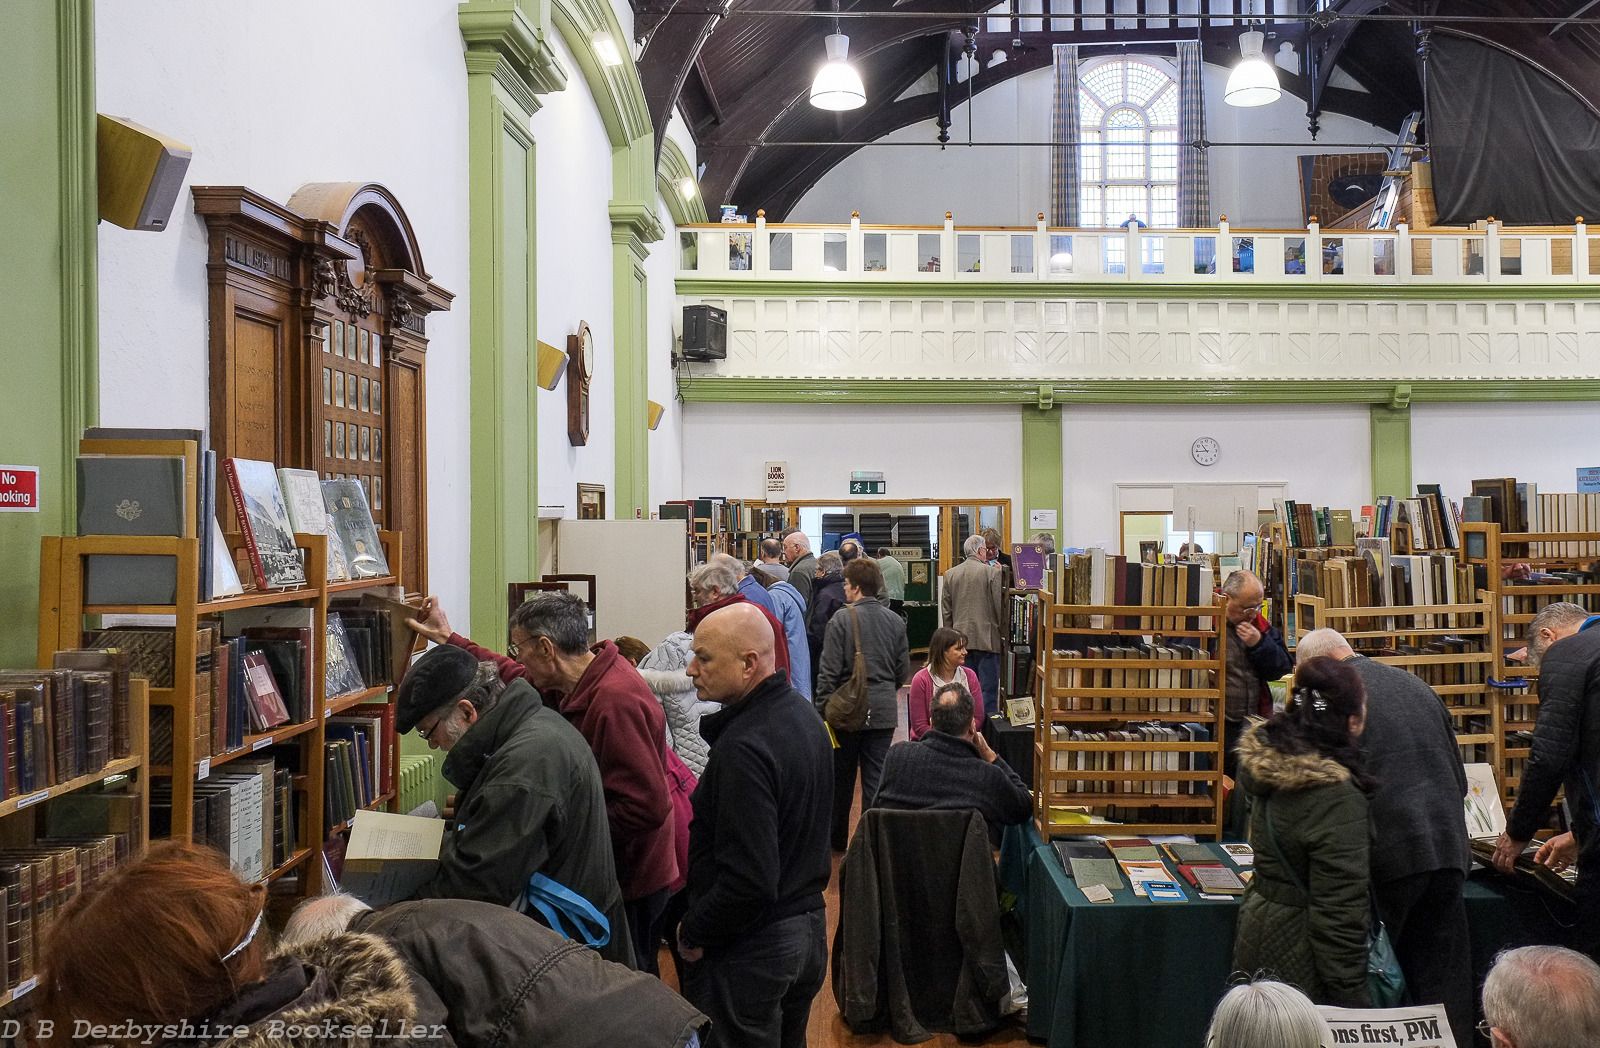 Market Harborough Book Fair